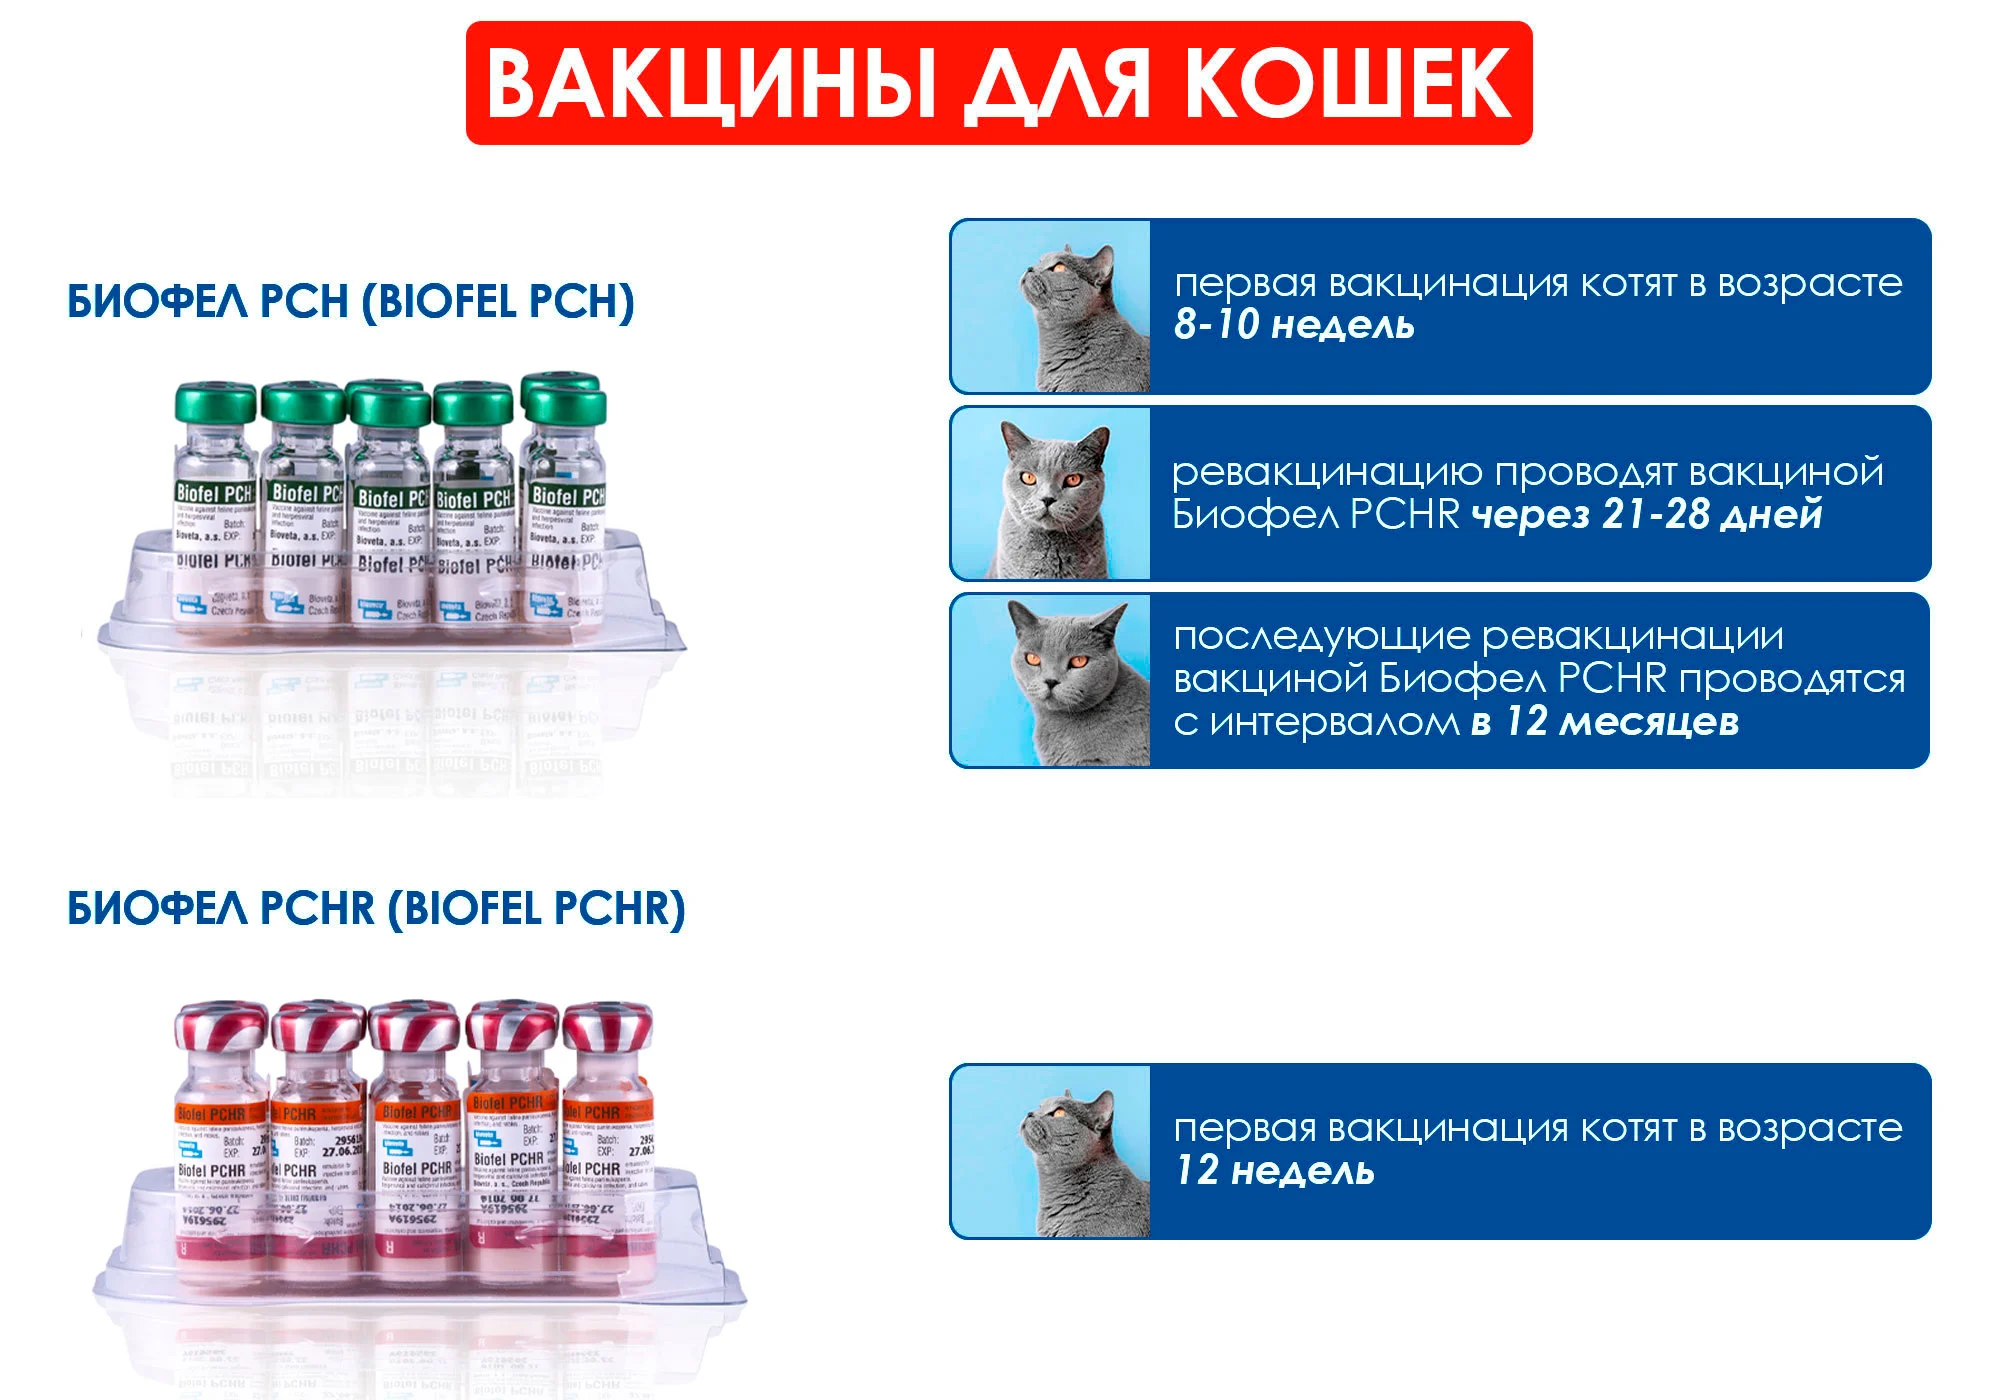 Прививка от бешенства кошке как часто. Биокан вакцина для собак схема вакцинации. Биофел схема вакцинации кошек. Биофел вакцина для собак. Биофел без бешенства вакцина для кошек.